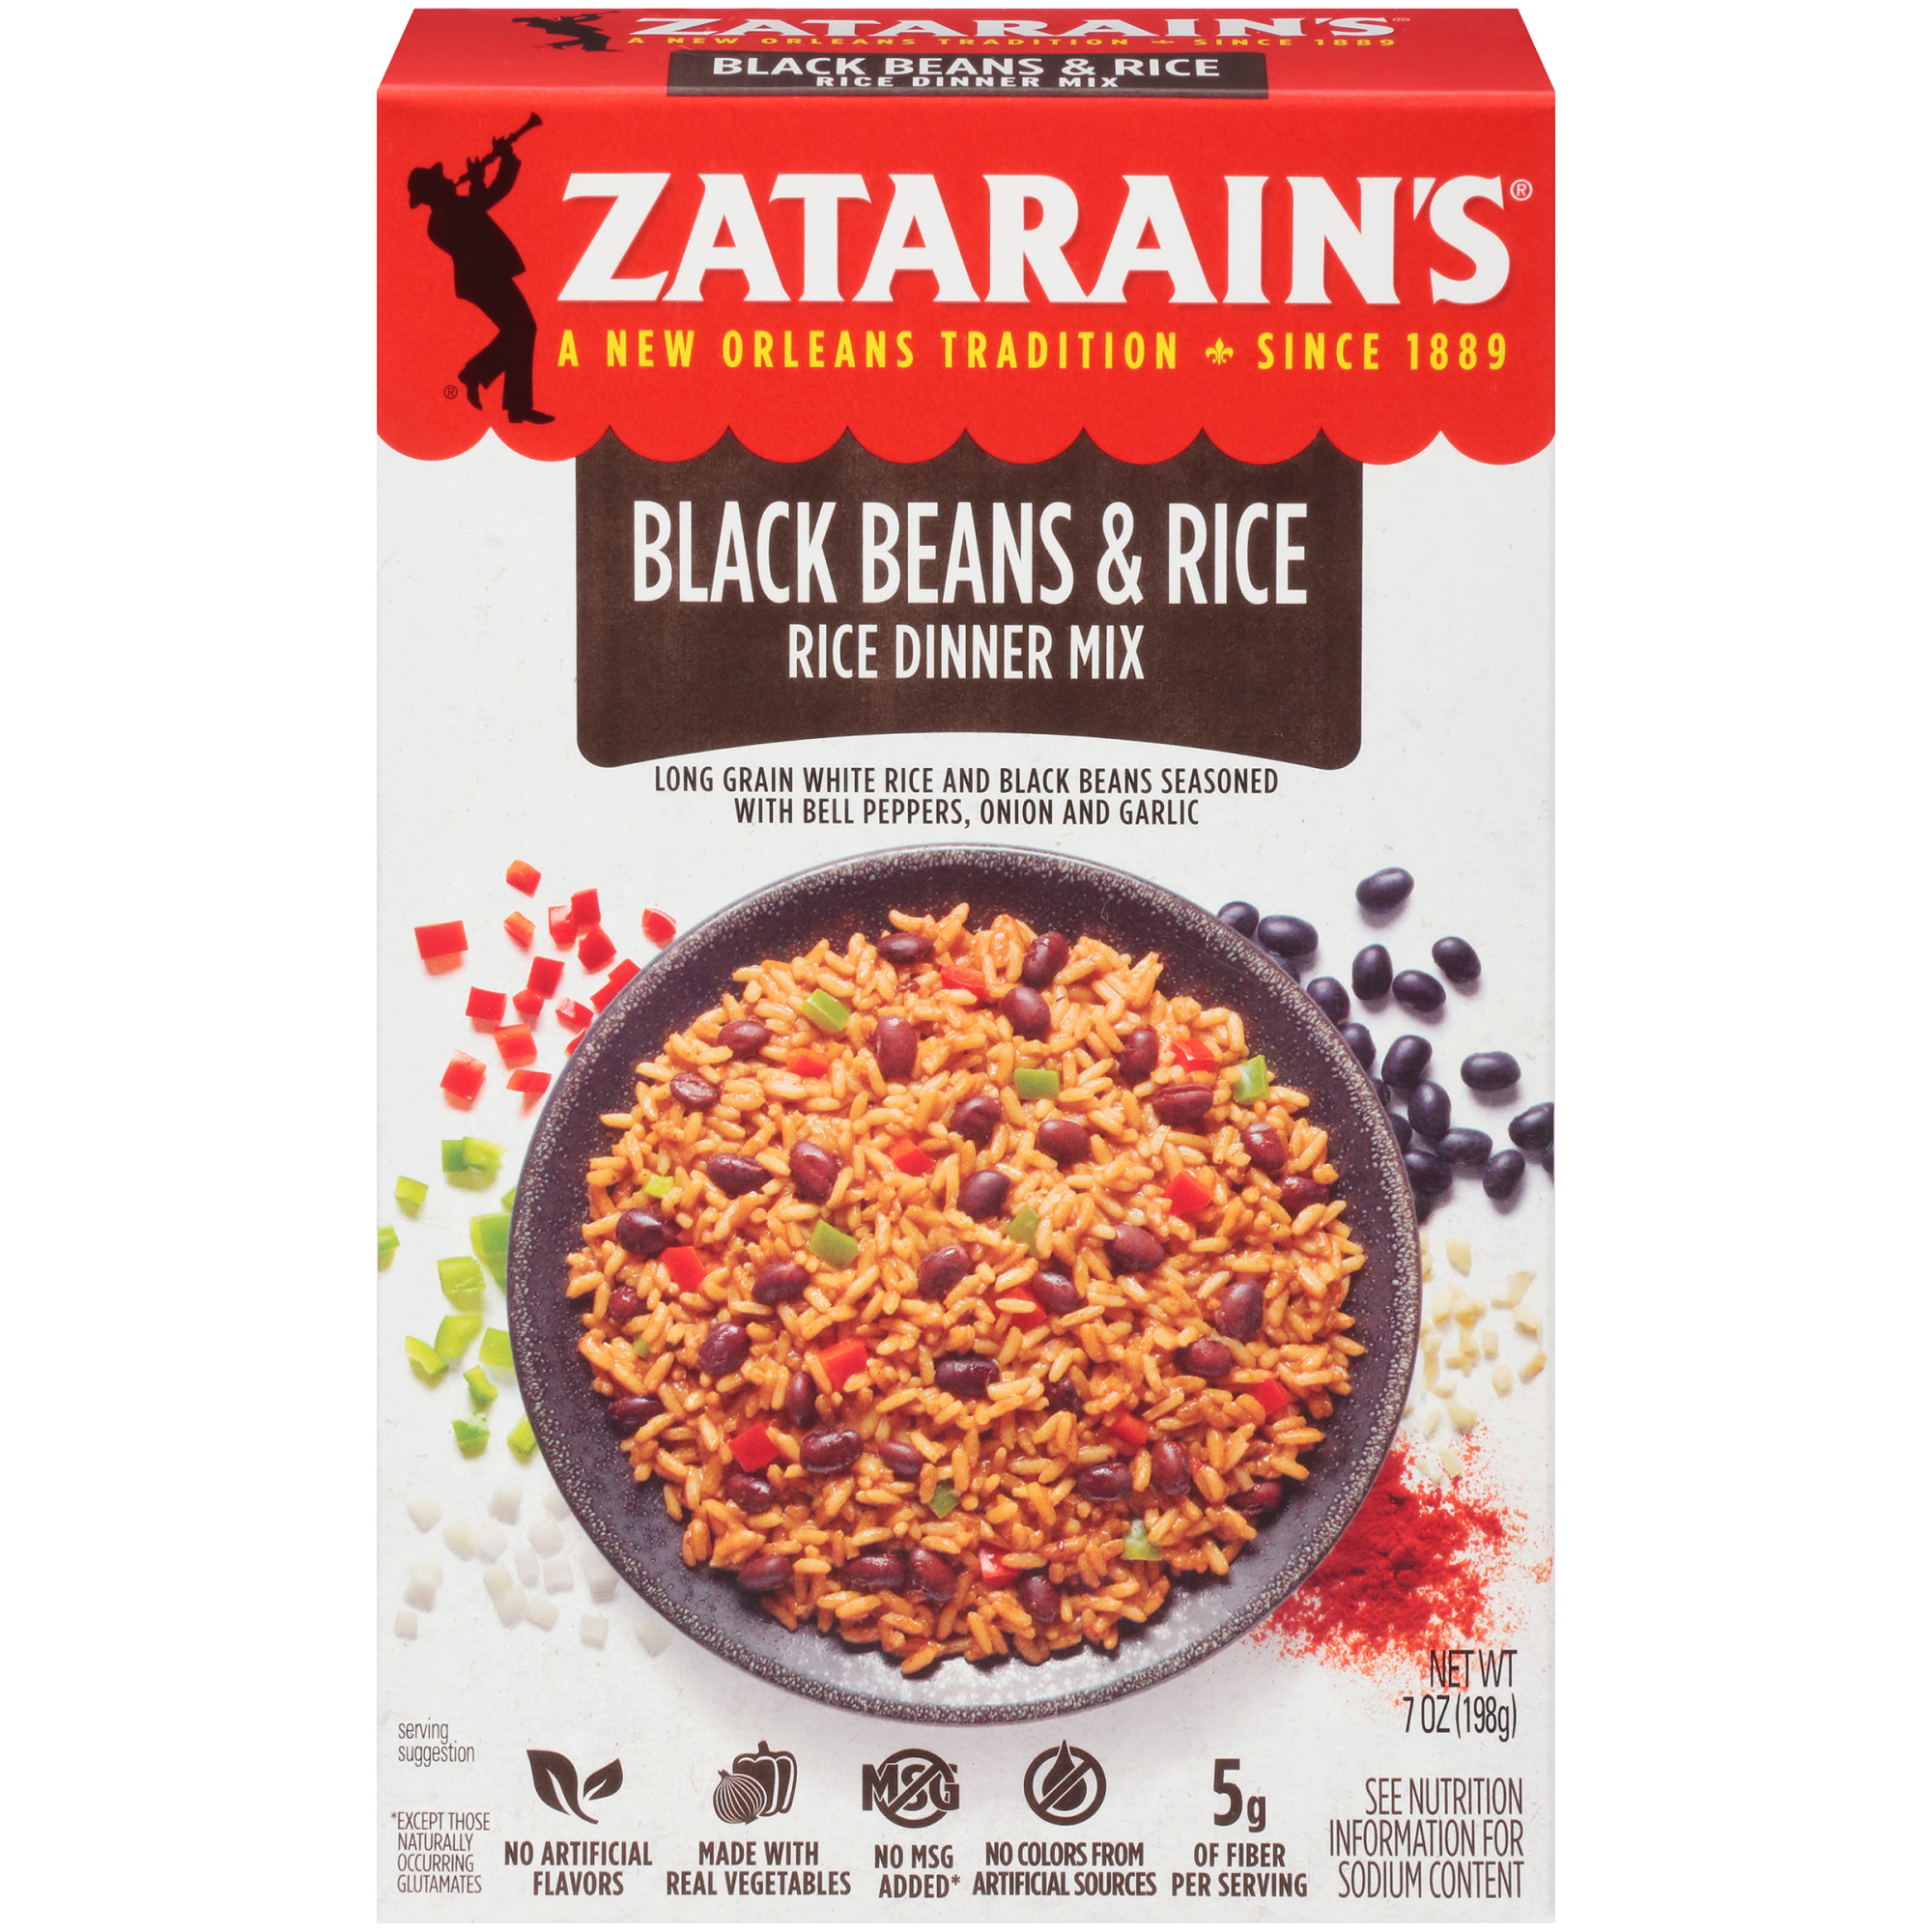 Cooking Zatarain’s Rice in a Rice Cooker